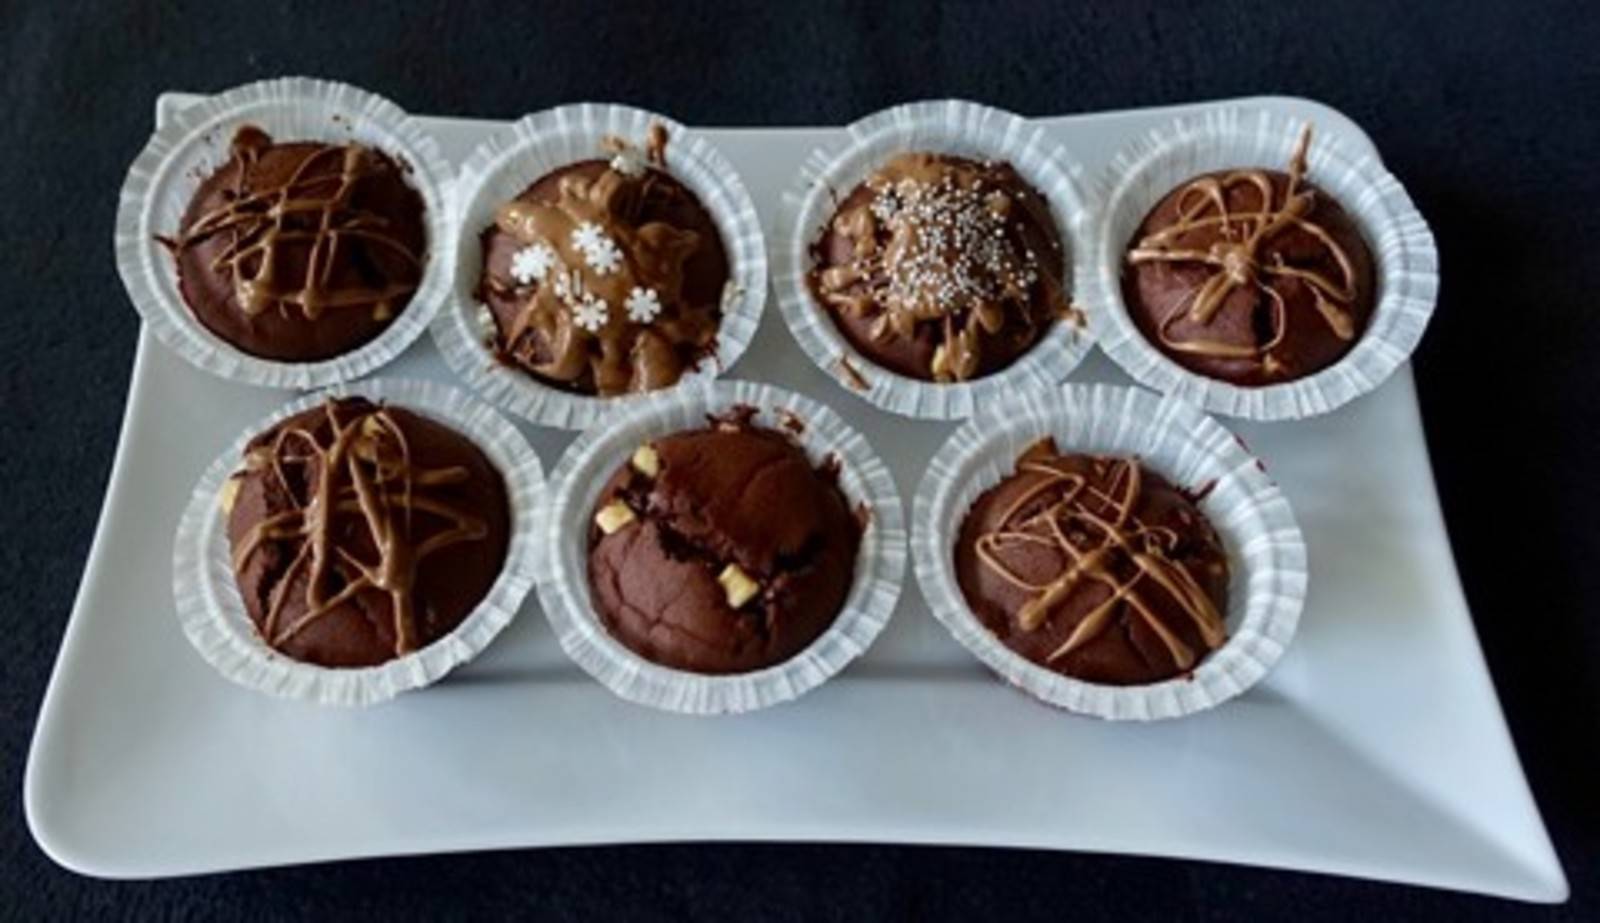 Schokoladen-Muffins